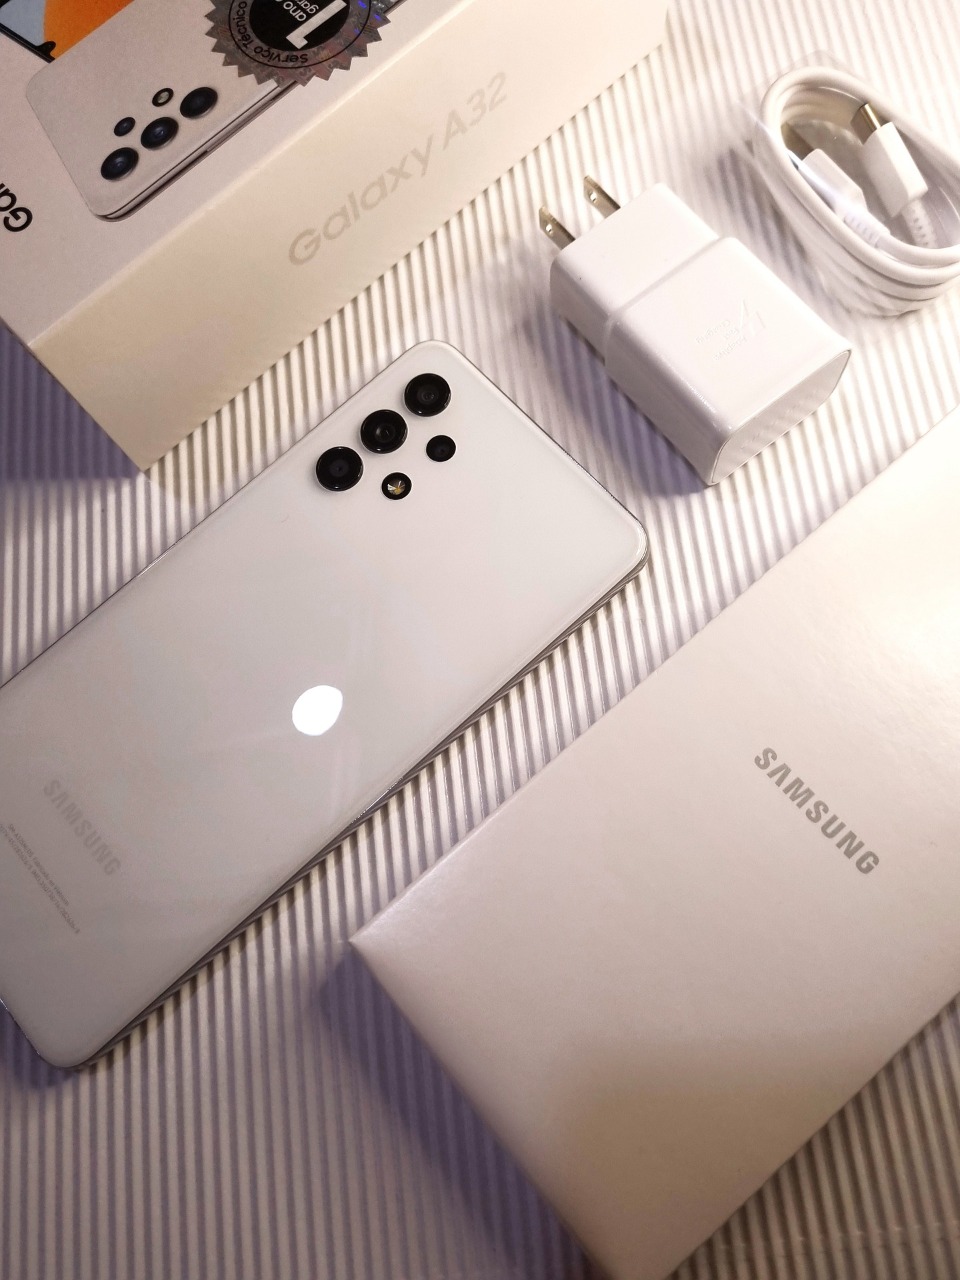 Samsung Galaxy A32 Smartphone yang Cocok untuk Gaming dan Konten Kreator